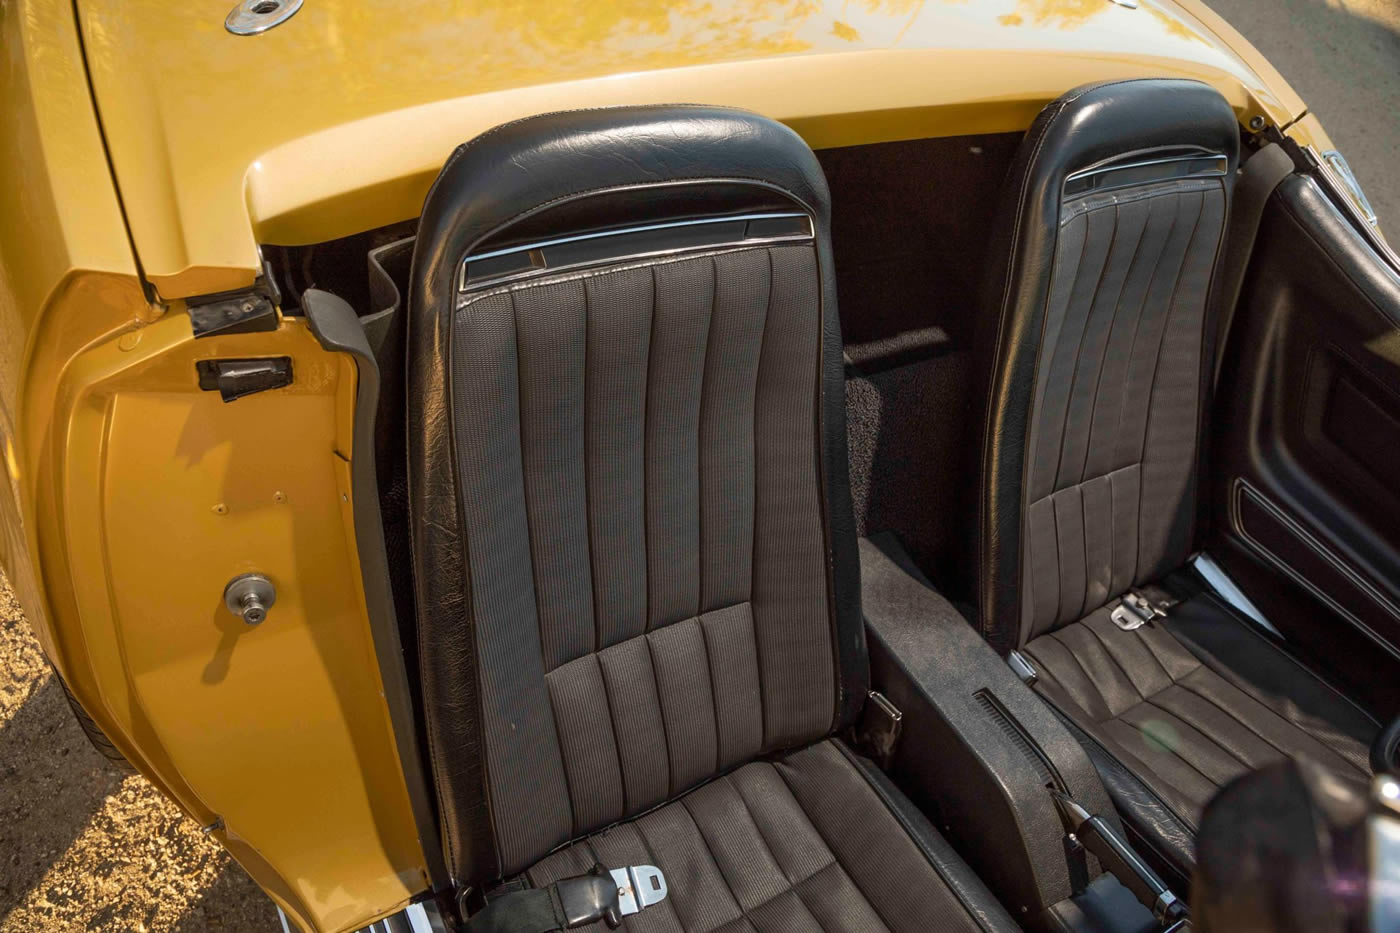 1972 Corvette Convertible in War Bonnet Yellow